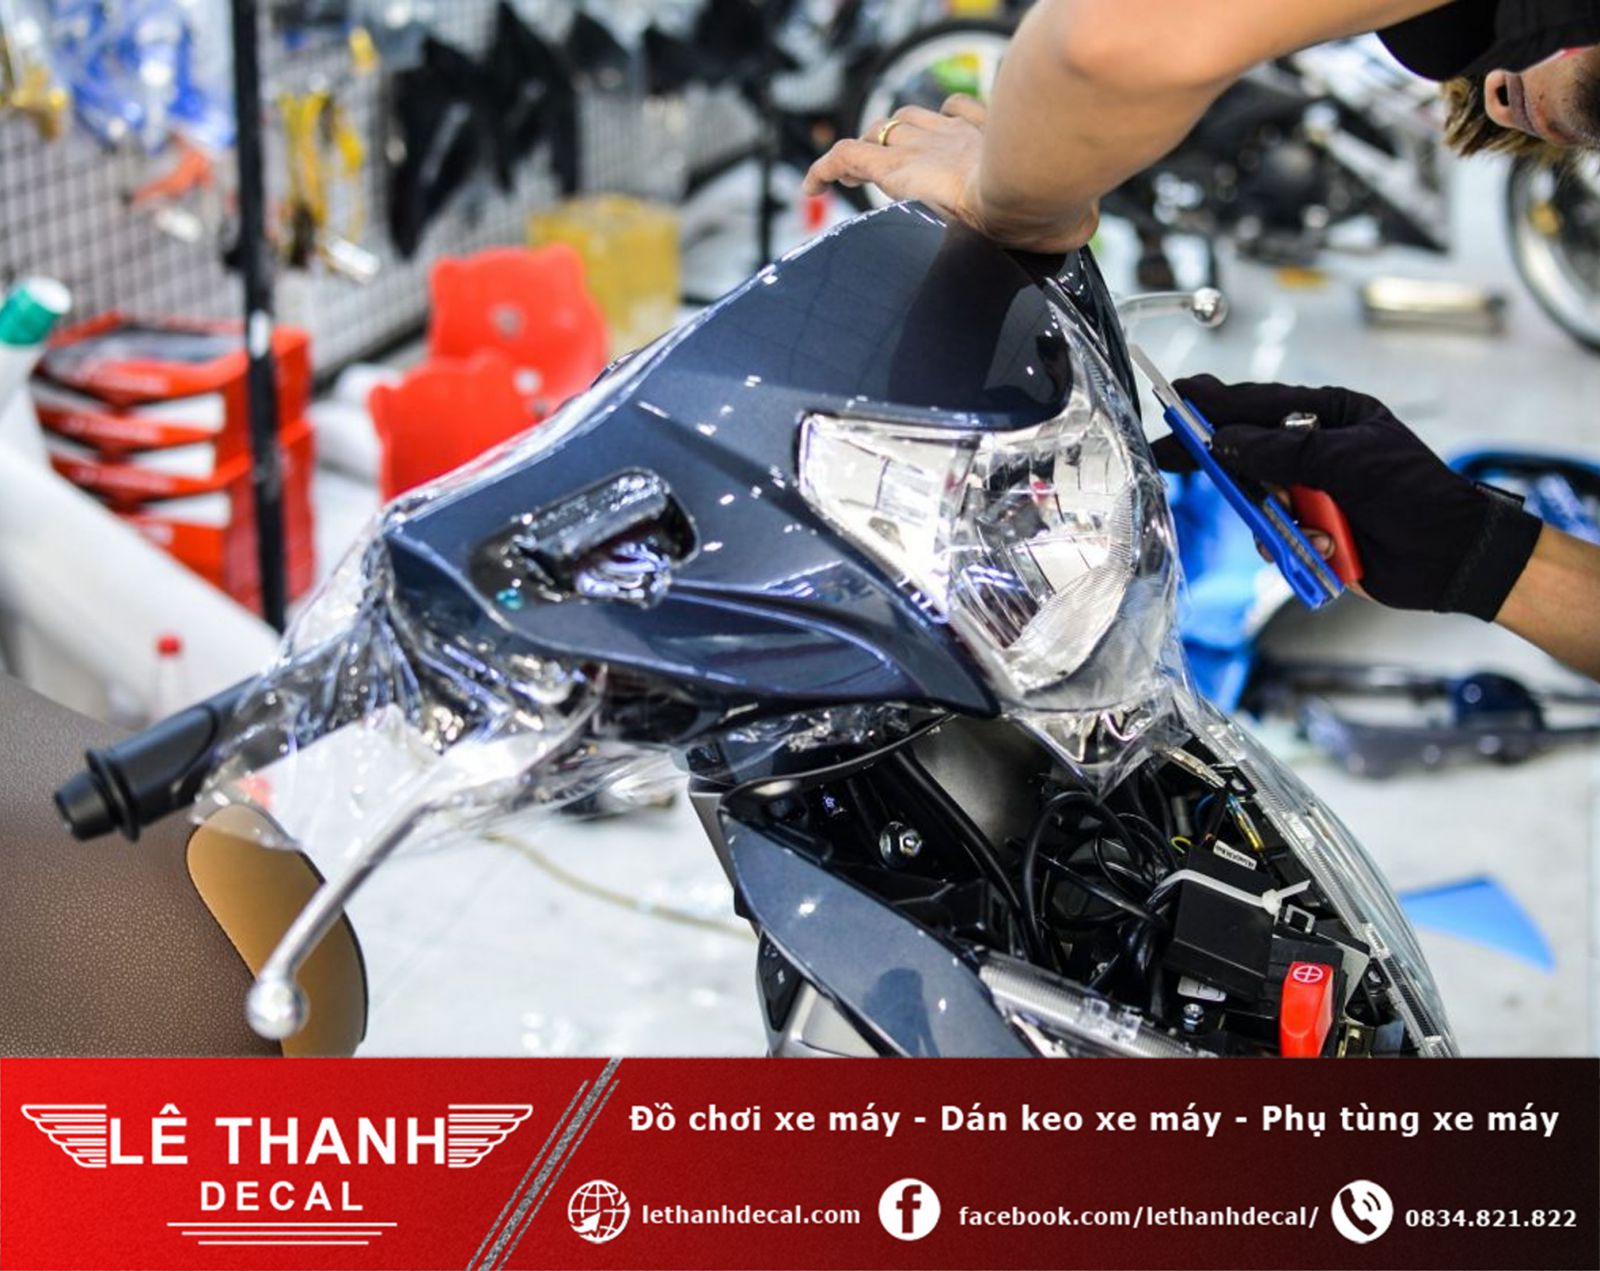 [TOP] 10+ tiệm dán decal xe máy tại quận Bình Tân uy tín, chất lượng 2023 